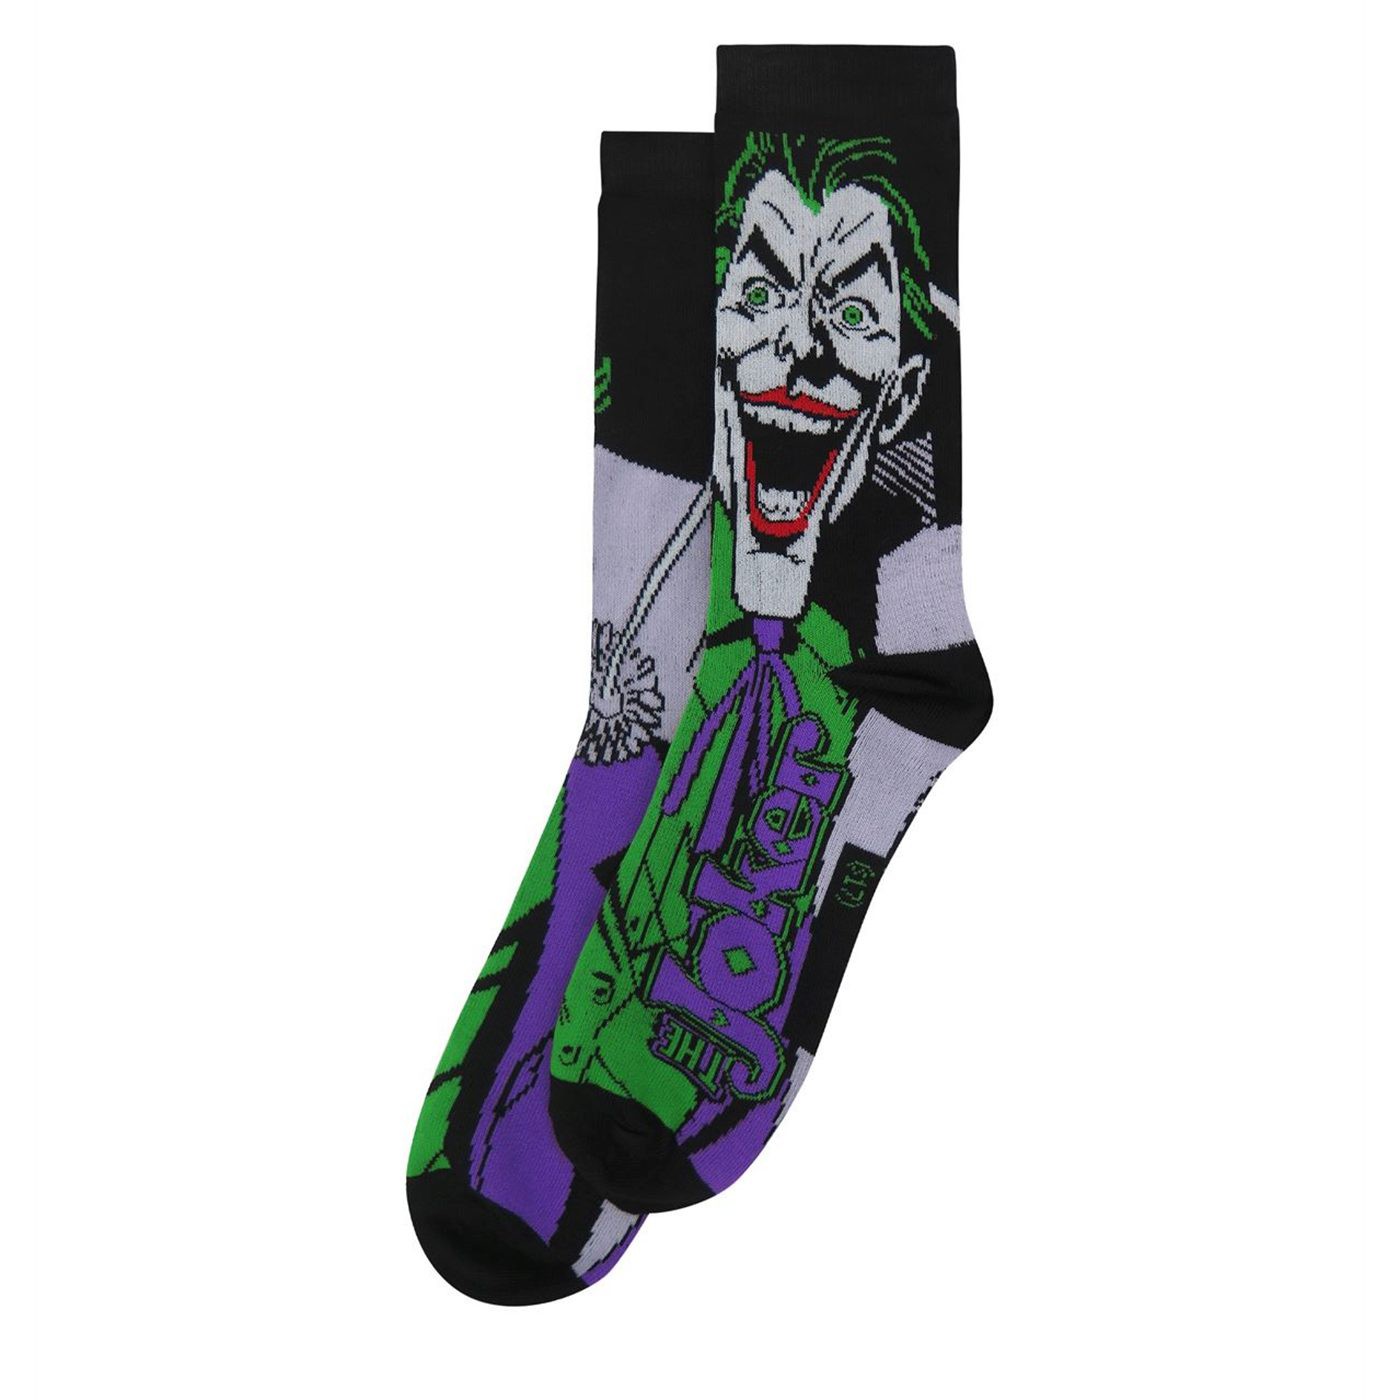 The Joker Ha-ha Crew Socks 2-Pack